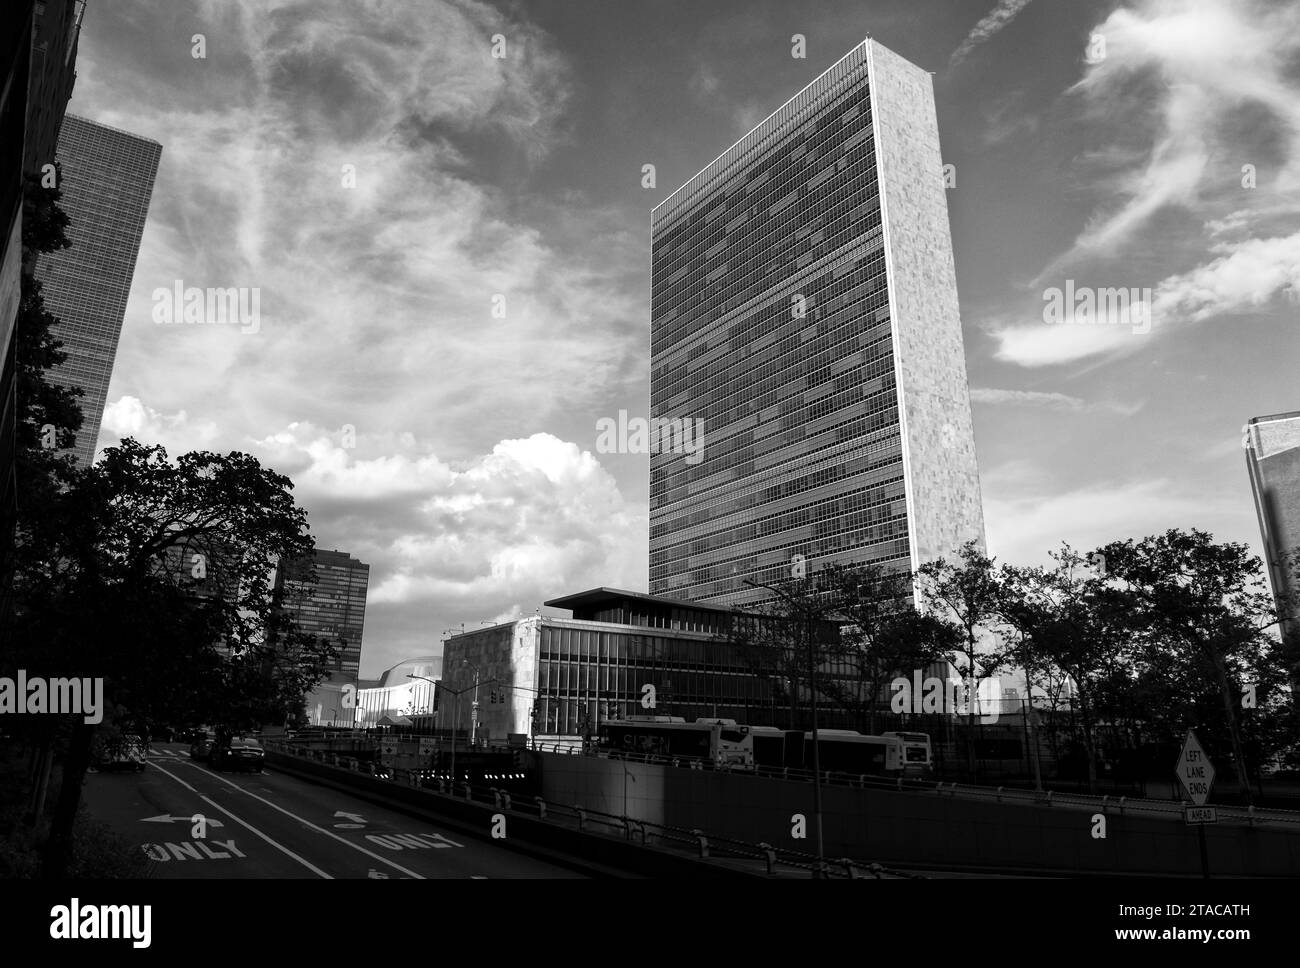 NEW YORK, États-Unis - 26 mai 2018 : le bâtiment des Nations Unies à New York est le siège de l'organisation des Nations Unies. Assemblée générale des Nations Unies. Banque D'Images